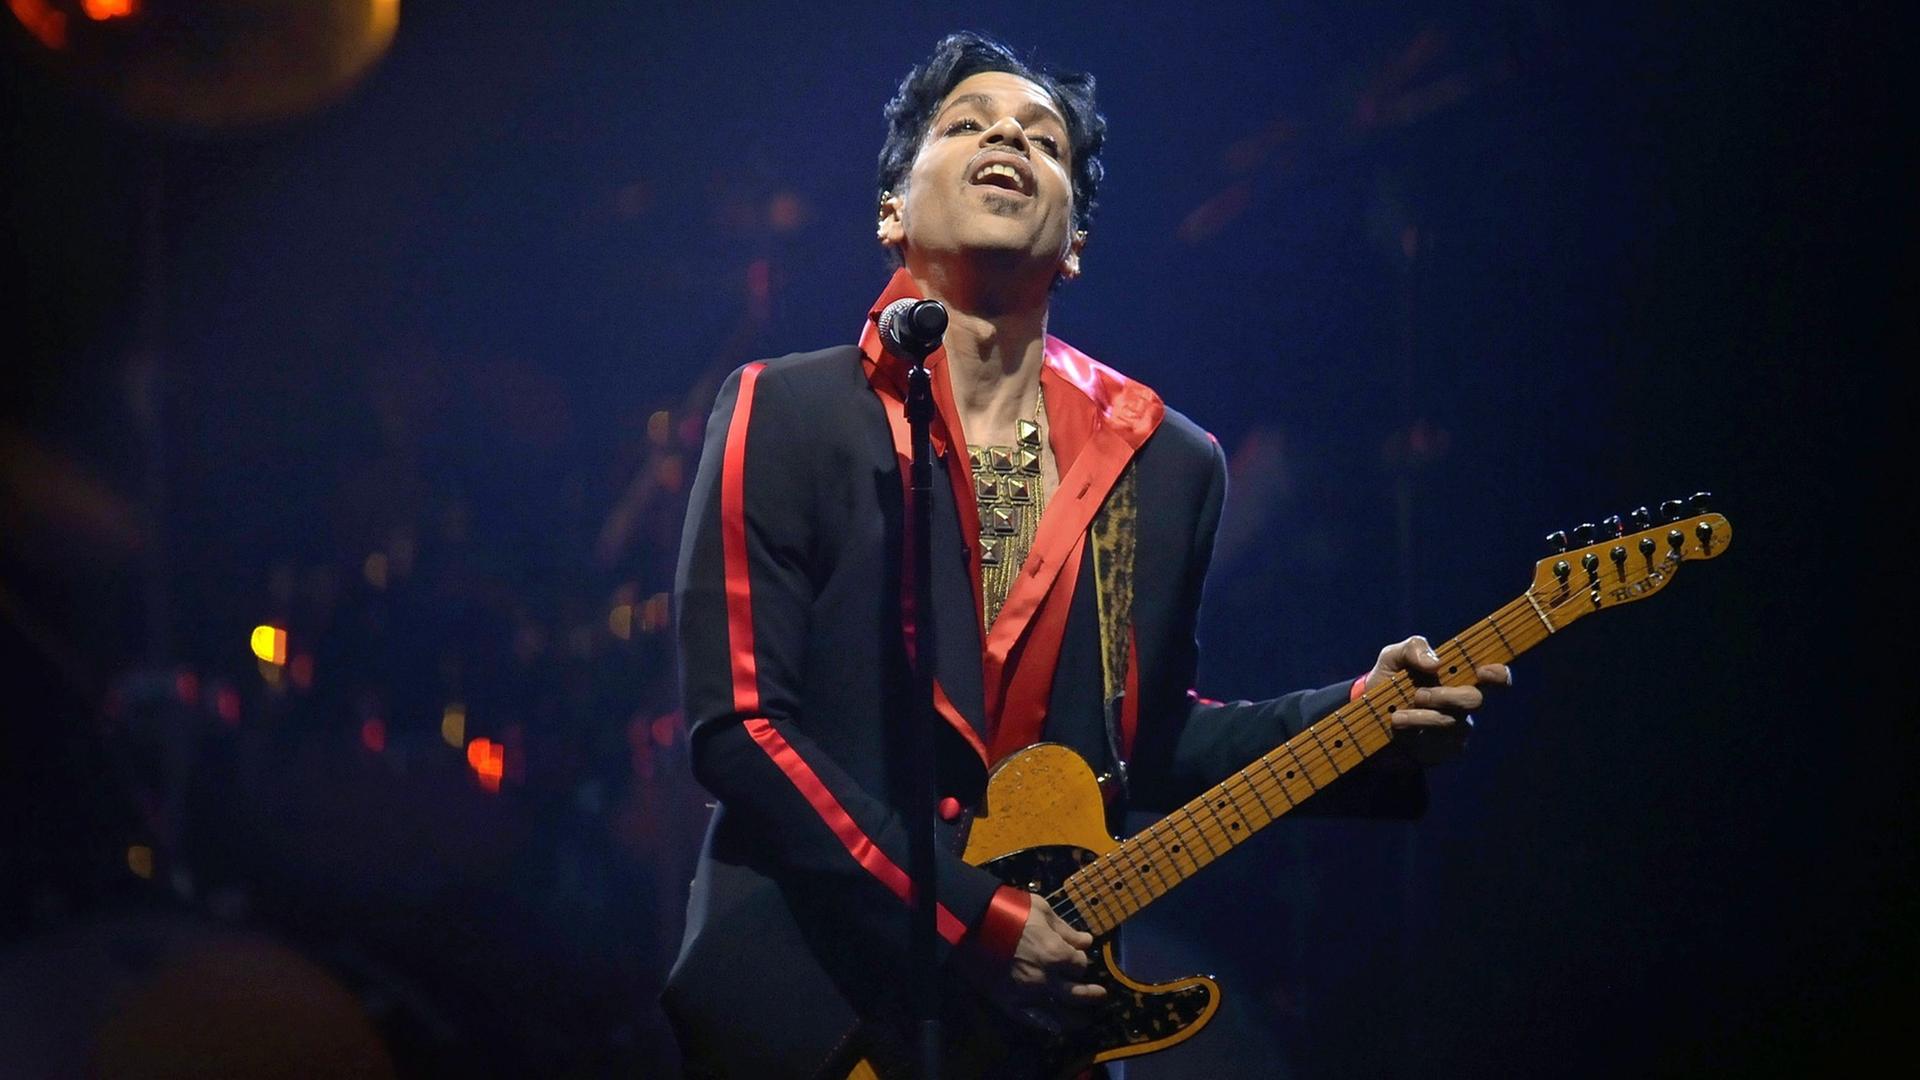 Der Musiker Prince bei einem Konzert im Jahr 2010.